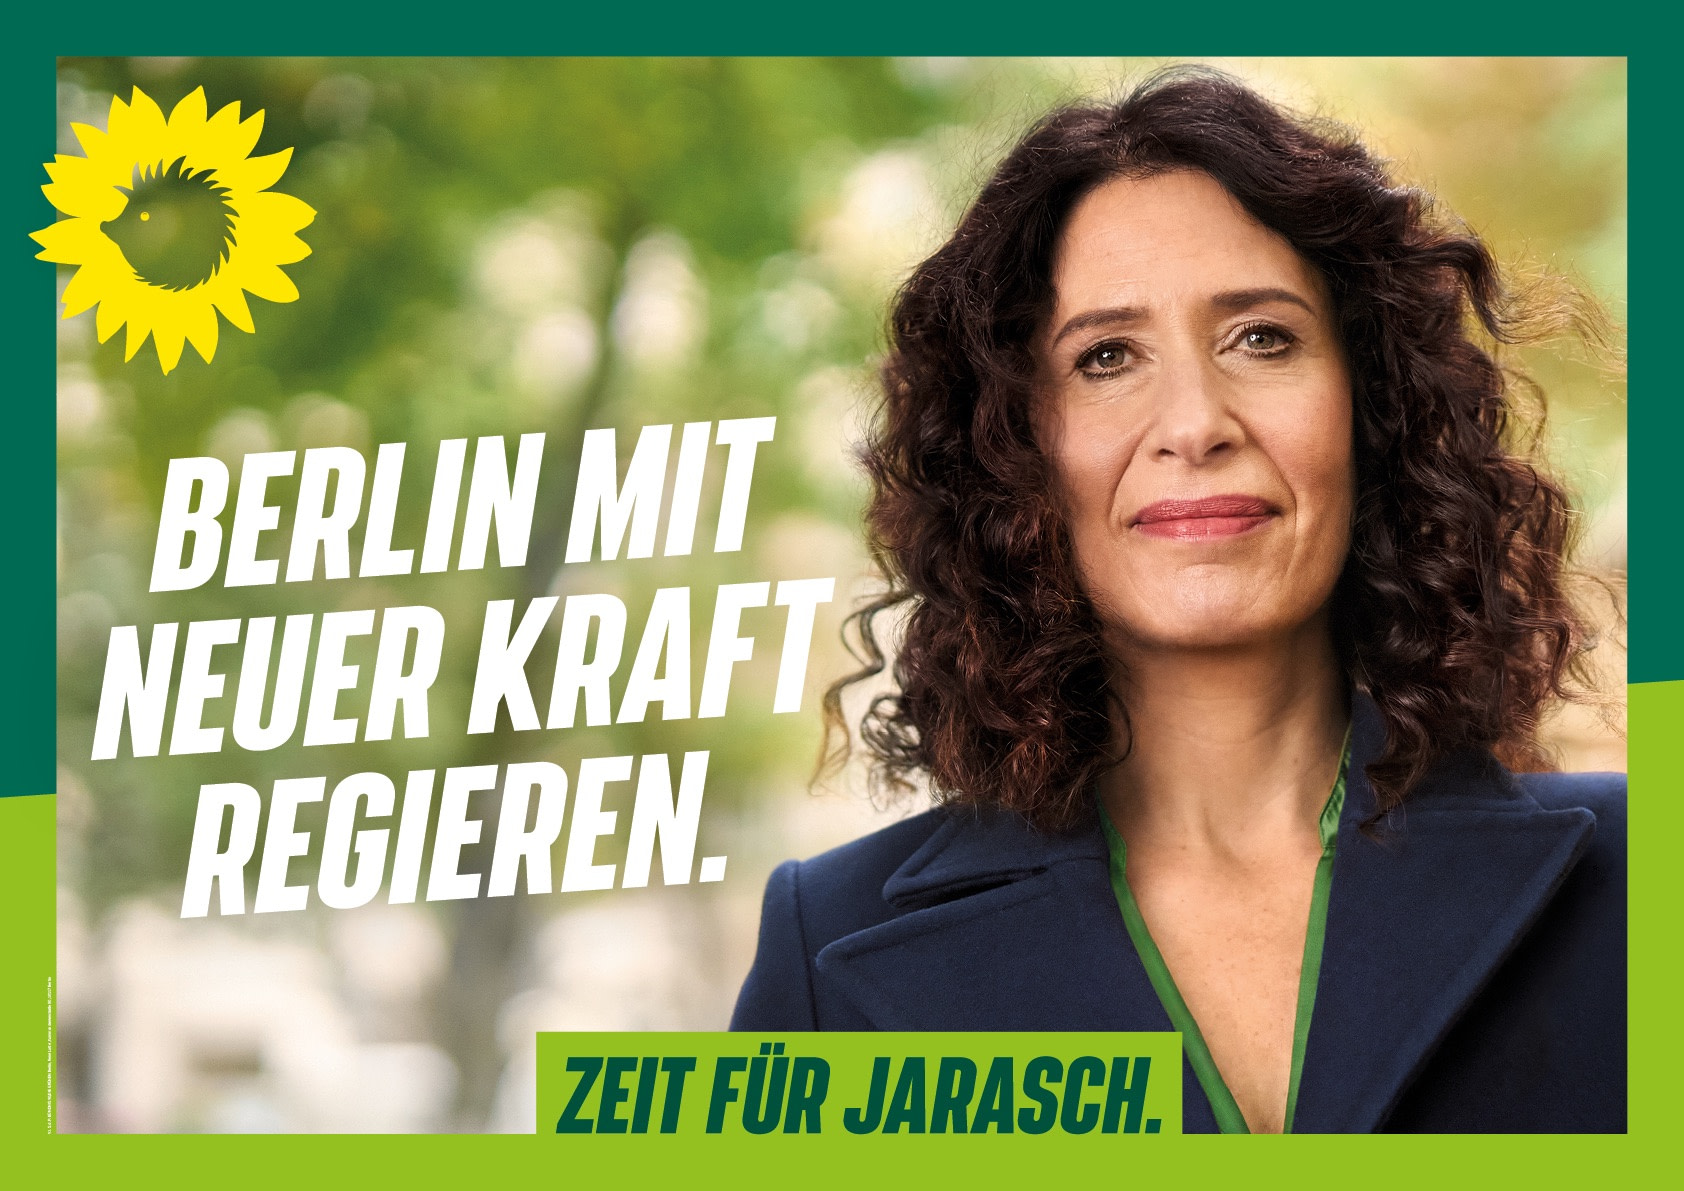 Großflächen-Plakat: Darauf ist ein Foto von Bettina Jarasch, die frontal in die Kamera blickt. Links von ihr steht die Headline `Berlin mit neuer Kraft regieren.`, darüber steht der Sonnenigel, darunter sitzt der Claim `Zeit für Jarasch.`. Das Motiv fasst ein grüner Rahmen ein.